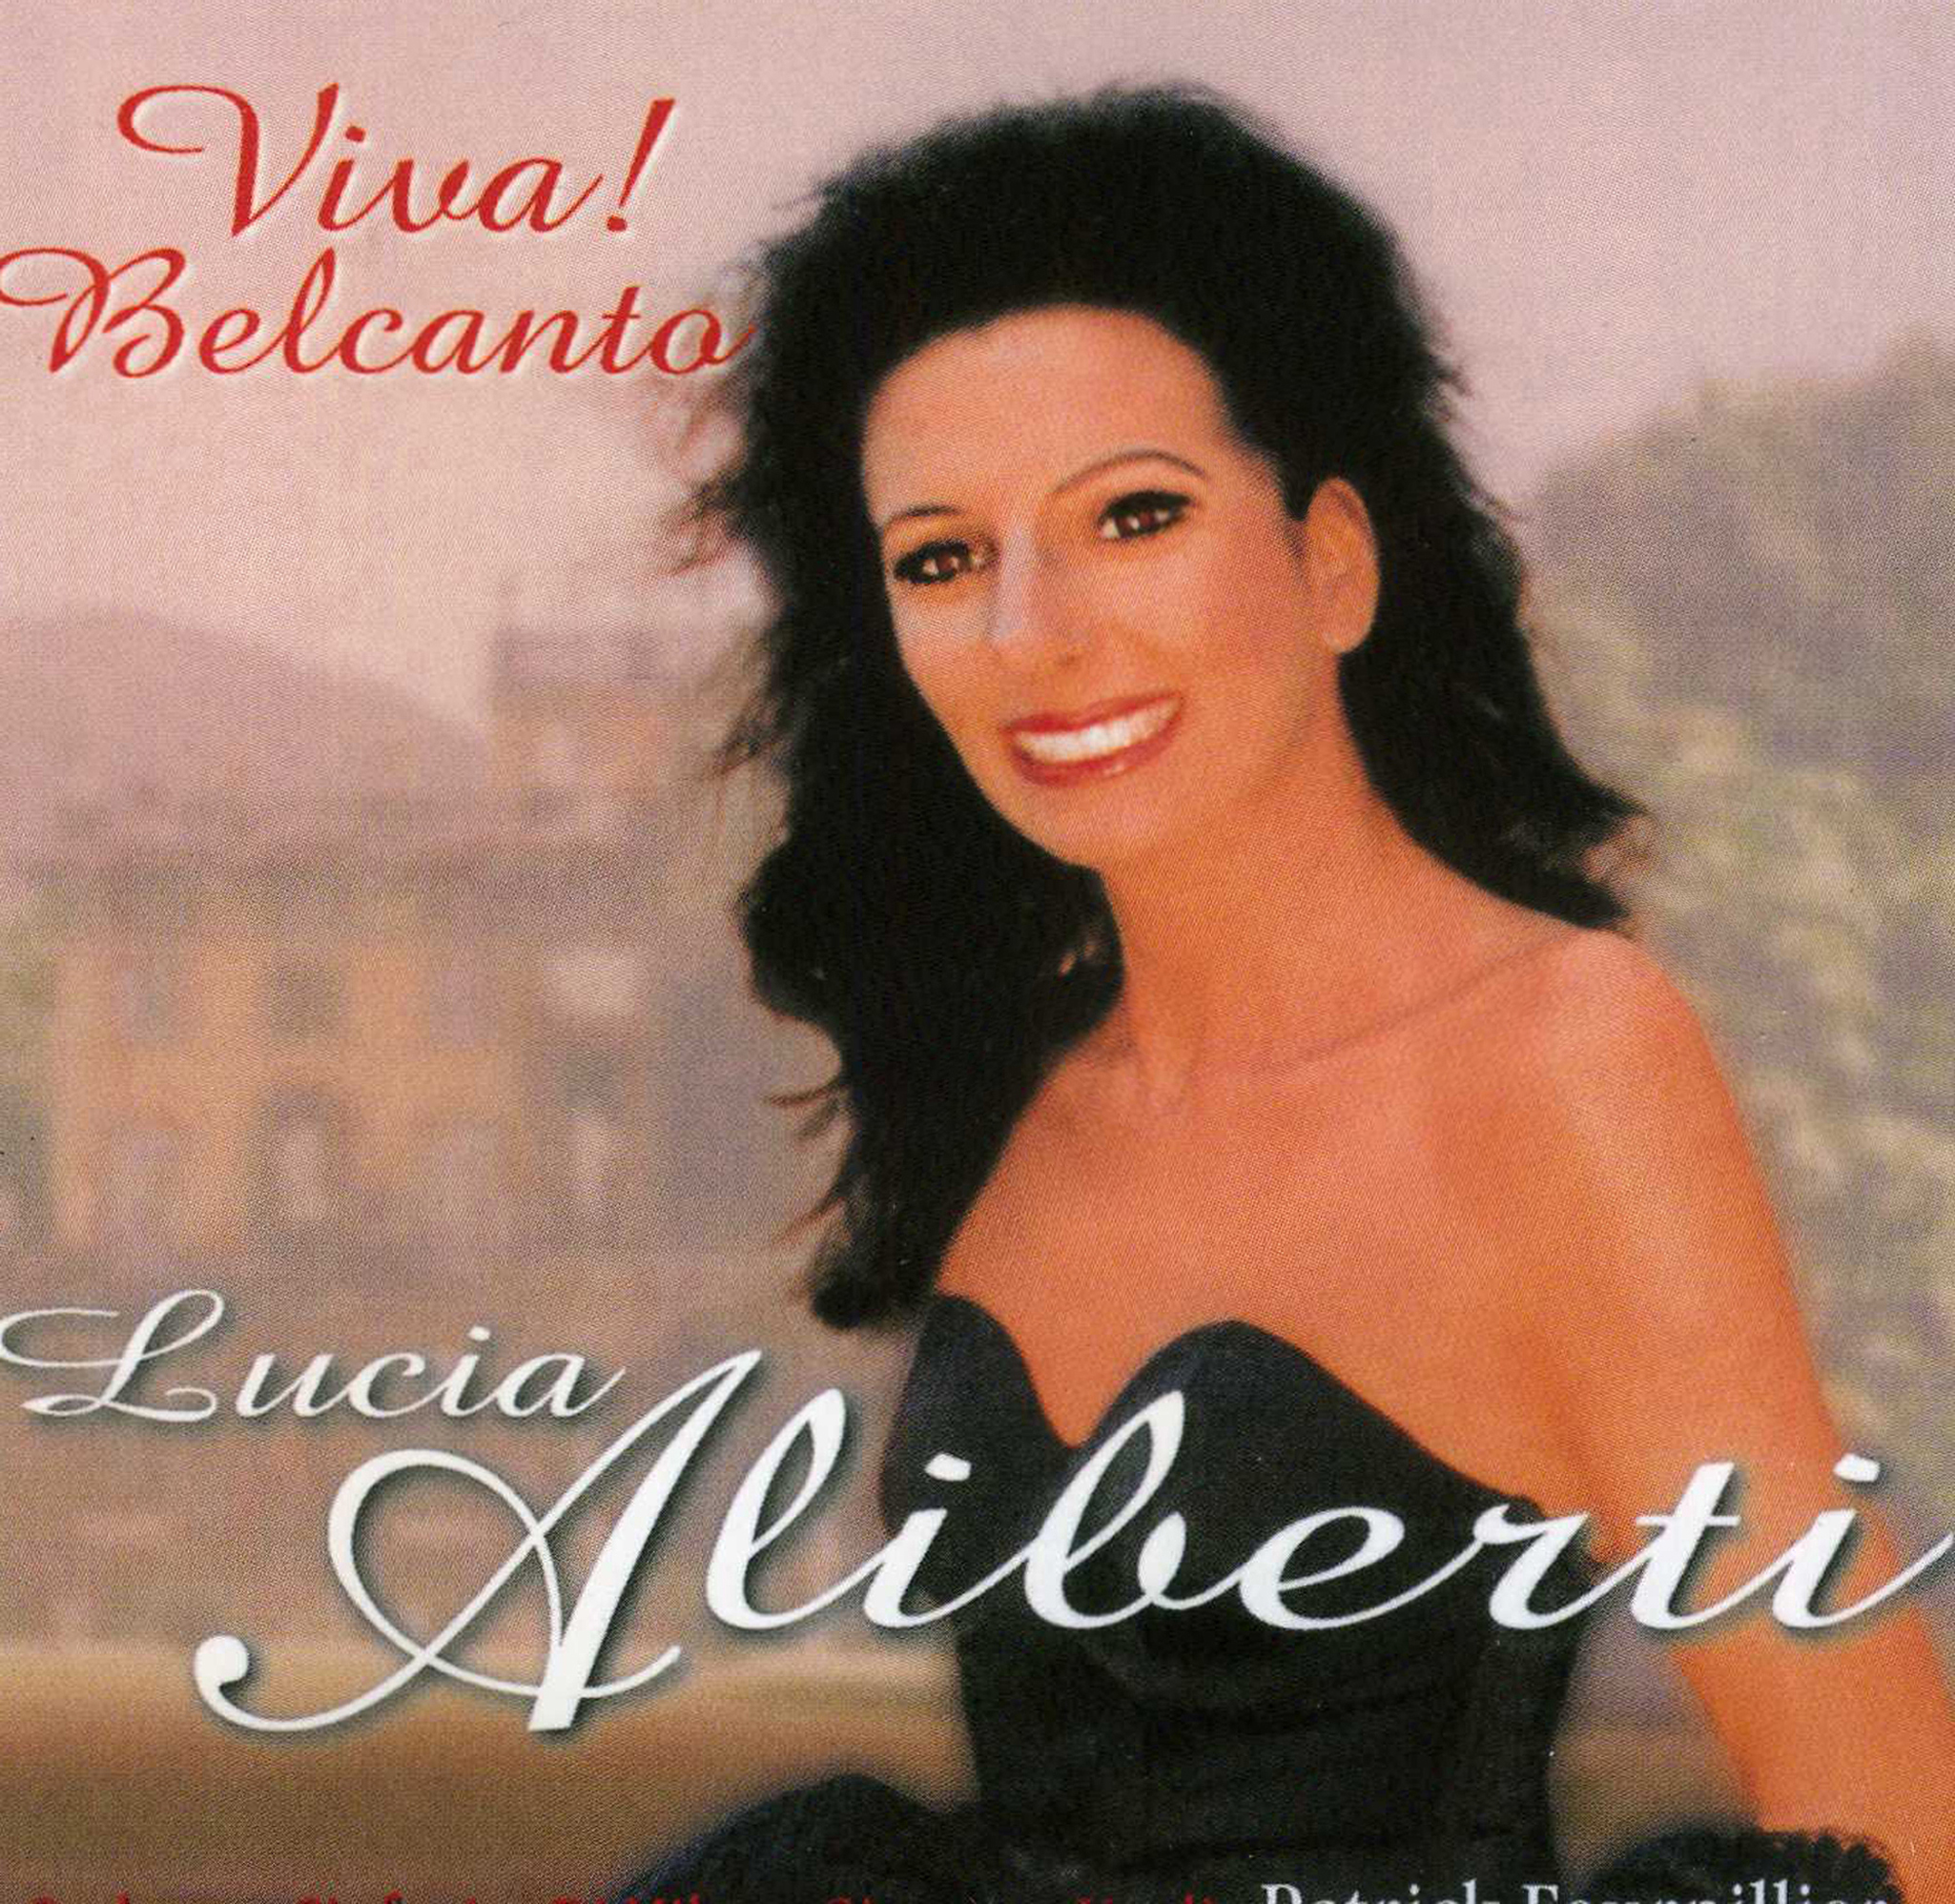 Lucia Aliberti⚘"Viva Belcanto"⚘conductor Patrick Fournillier⚘Orchestra Sinfonica Di Milano Giuseppe Verdi⚘CD Recording⚘RCA BMG Classics⚘:http://www.luciaaliberti.it #luciaaliberti #patrickfournillier #vivabelcanto #orchestrasinfonicadimilanogiuseppeverdi #rcabmgclassics